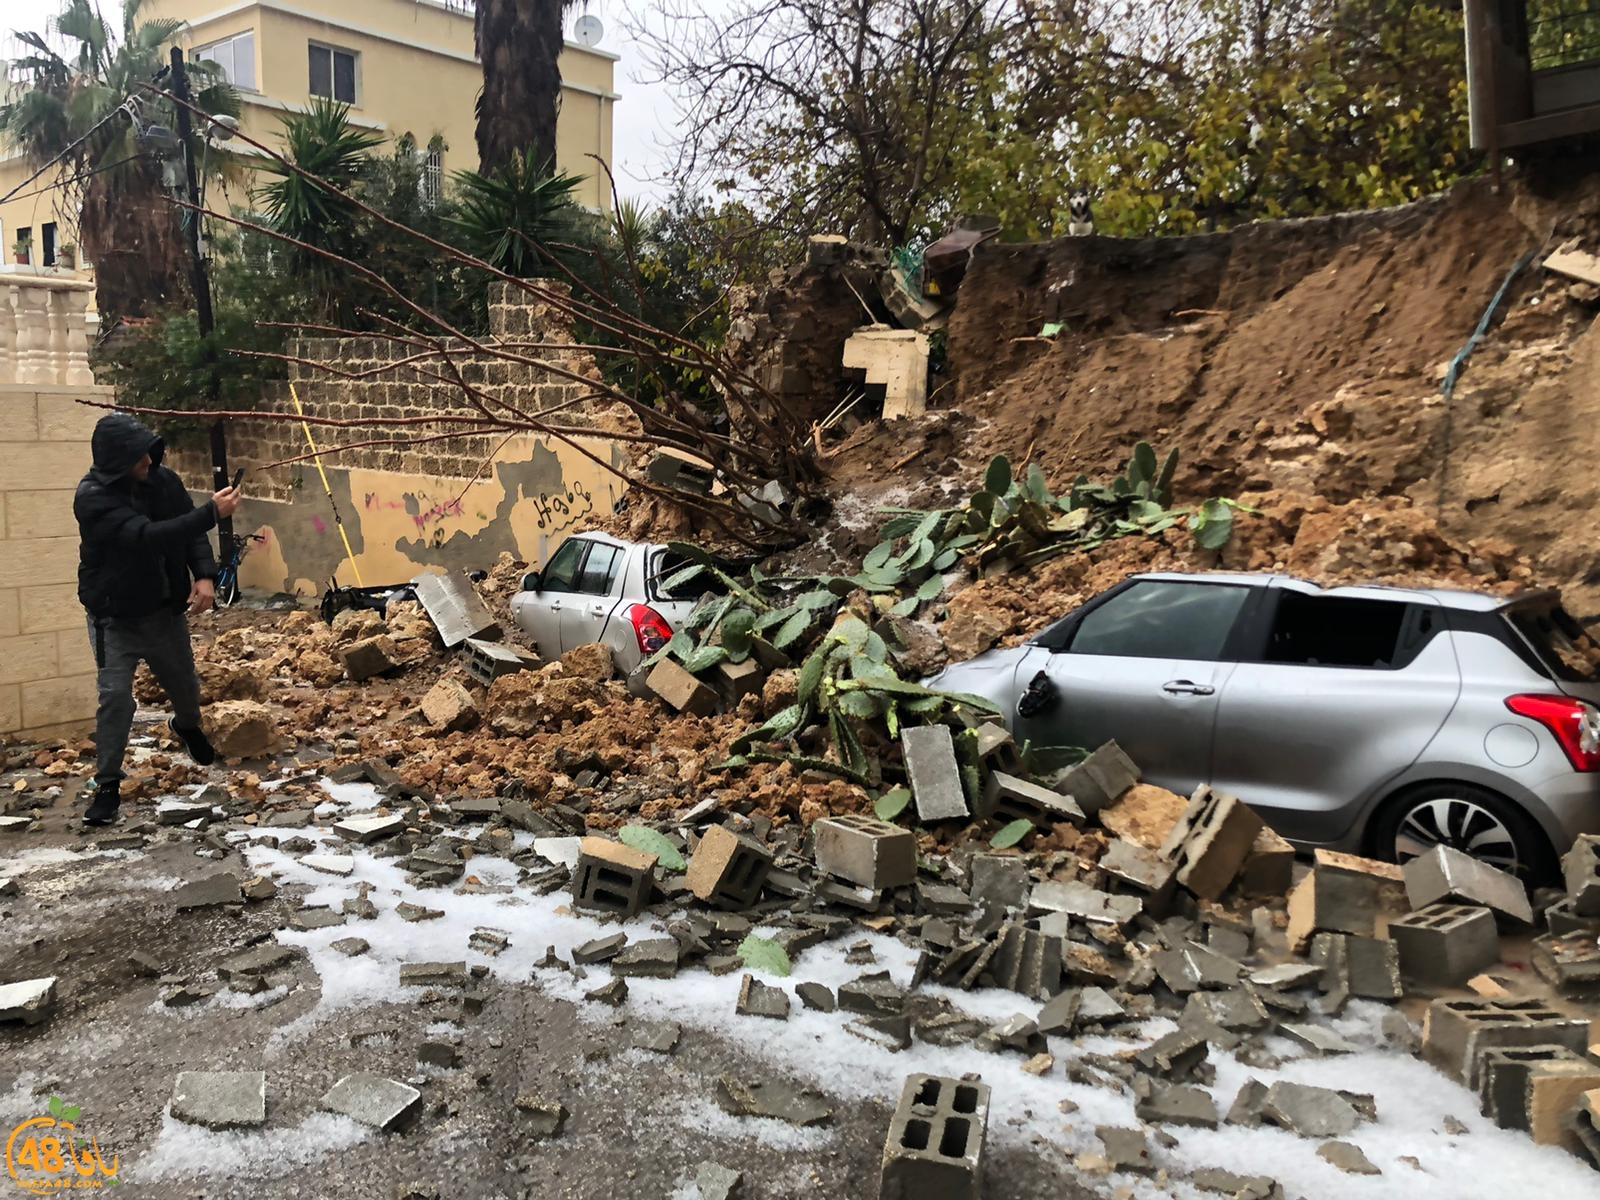   فيديو: أضرار جسيمة في الممتلكات اثر انهيار جدار بيافا بسبب تدفق مياه الأمطار